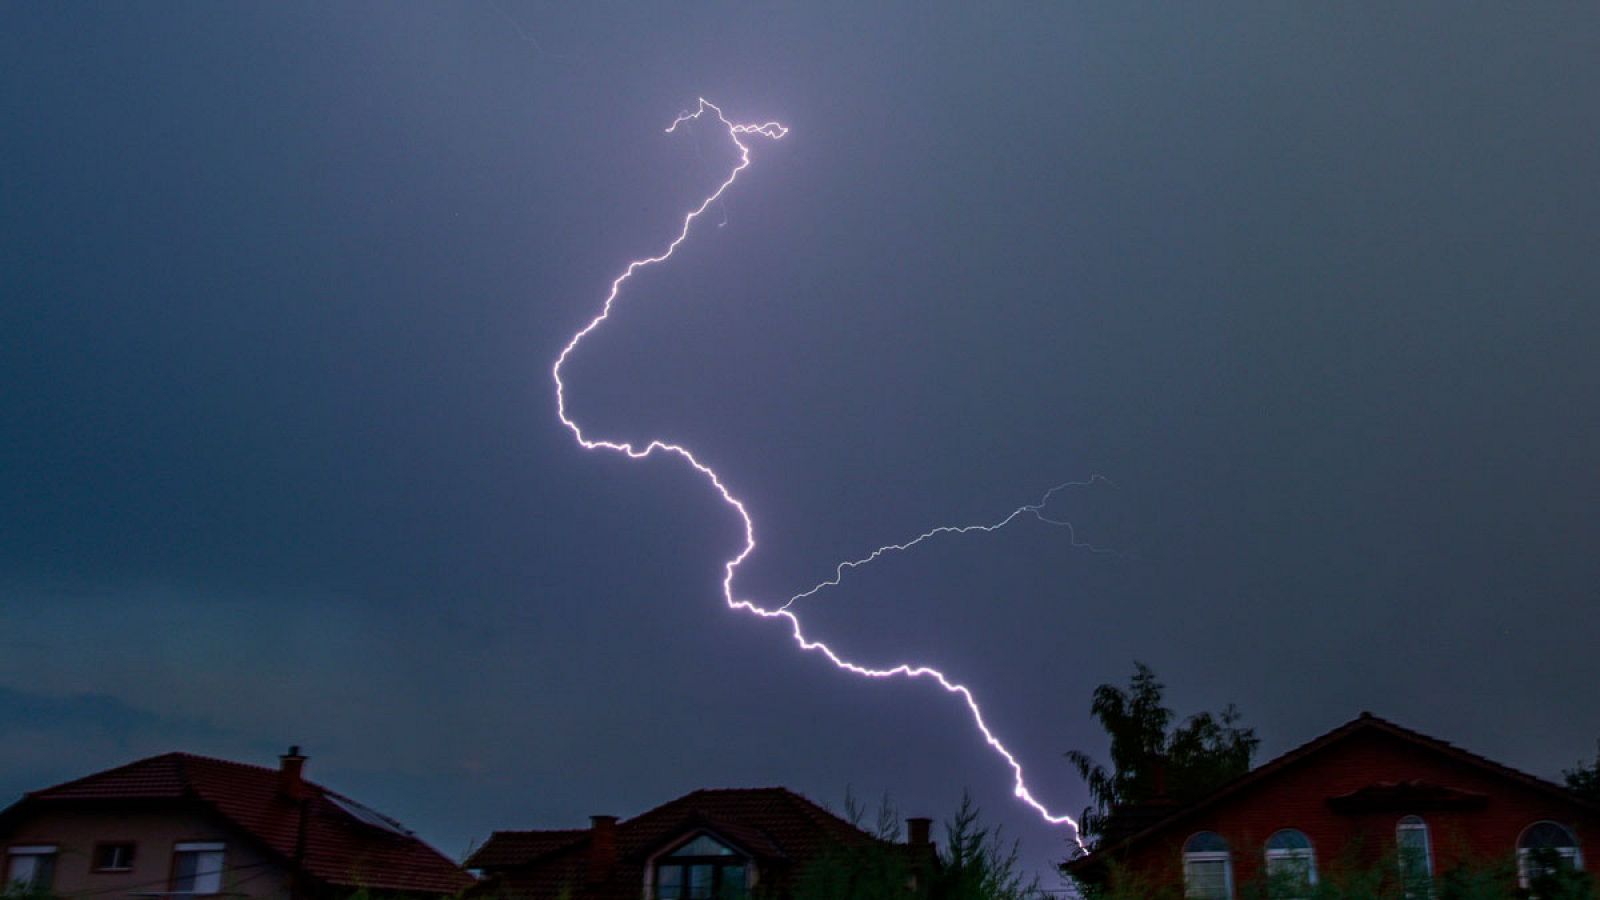 Vista de un rayo durante una tormenta eléctrica sobre la villa de Bardovci, cerca de Skopie (Macedonia).1